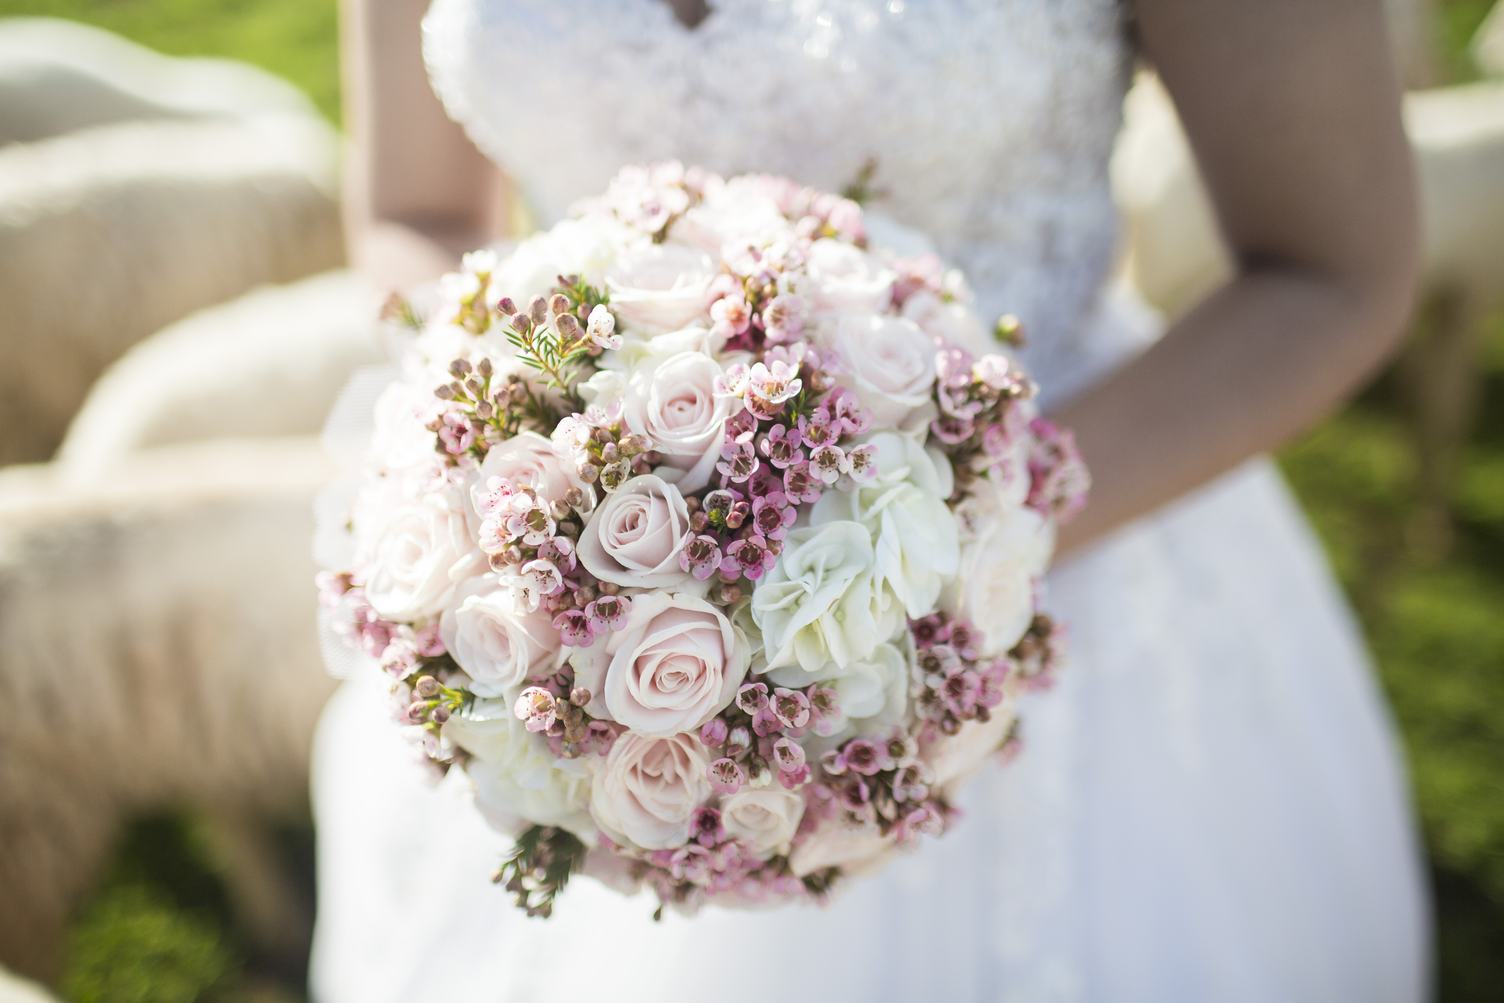 Beautiful Wedding Bouquet in Bride's Hands